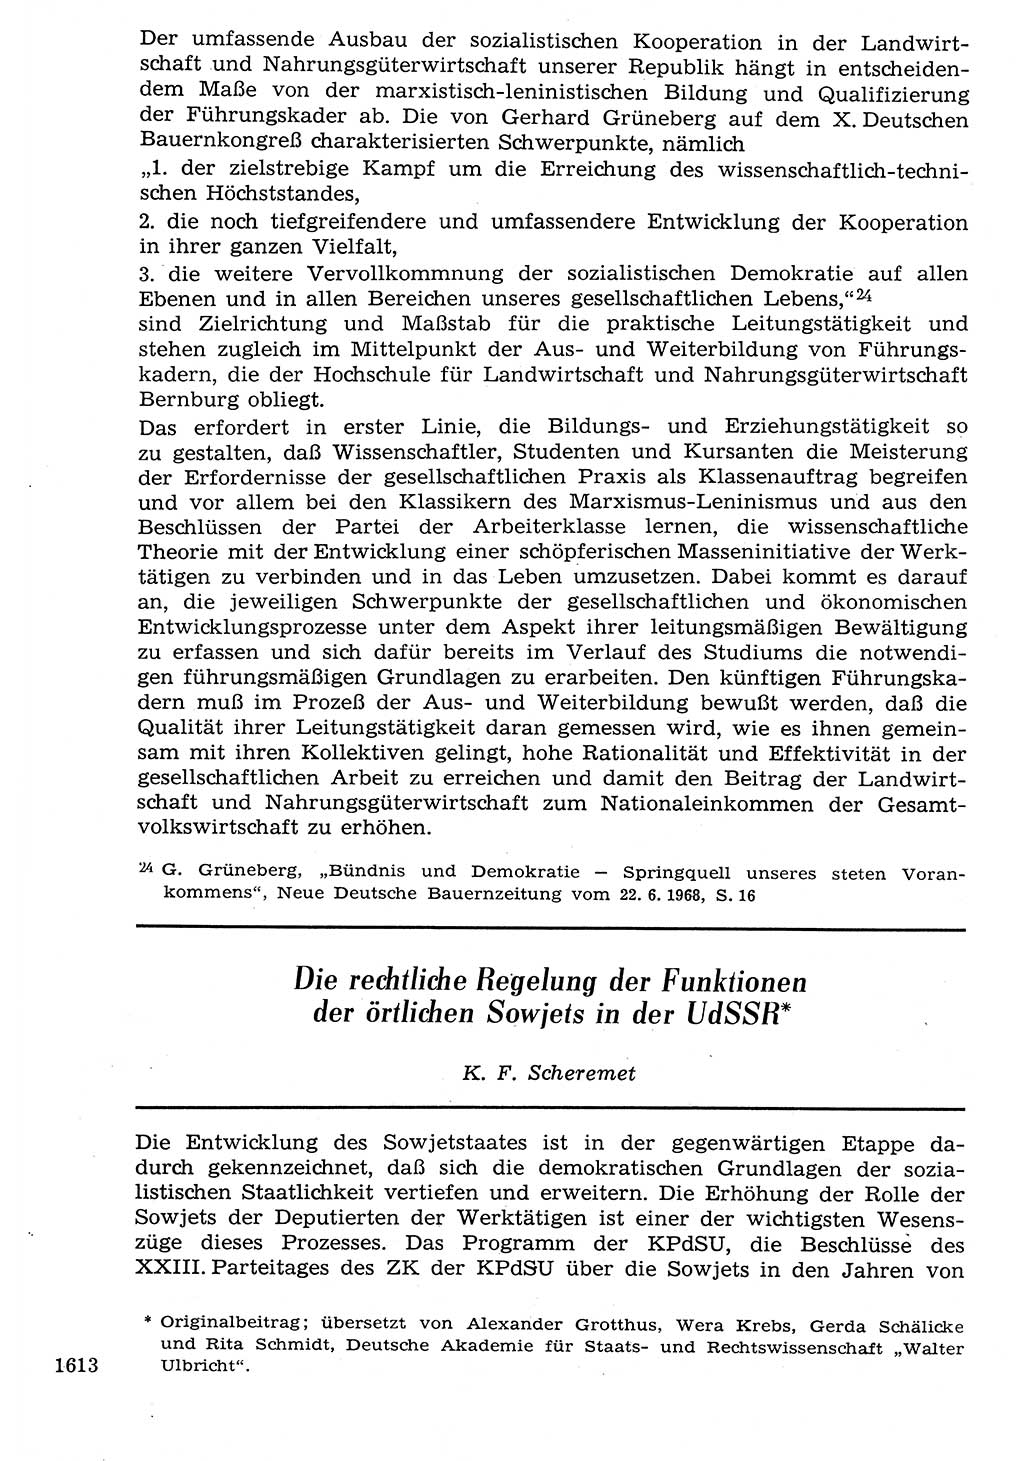 Staat und Recht (StuR), 17. Jahrgang [Deutsche Demokratische Republik (DDR)] 1968, Seite 1613 (StuR DDR 1968, S. 1613)